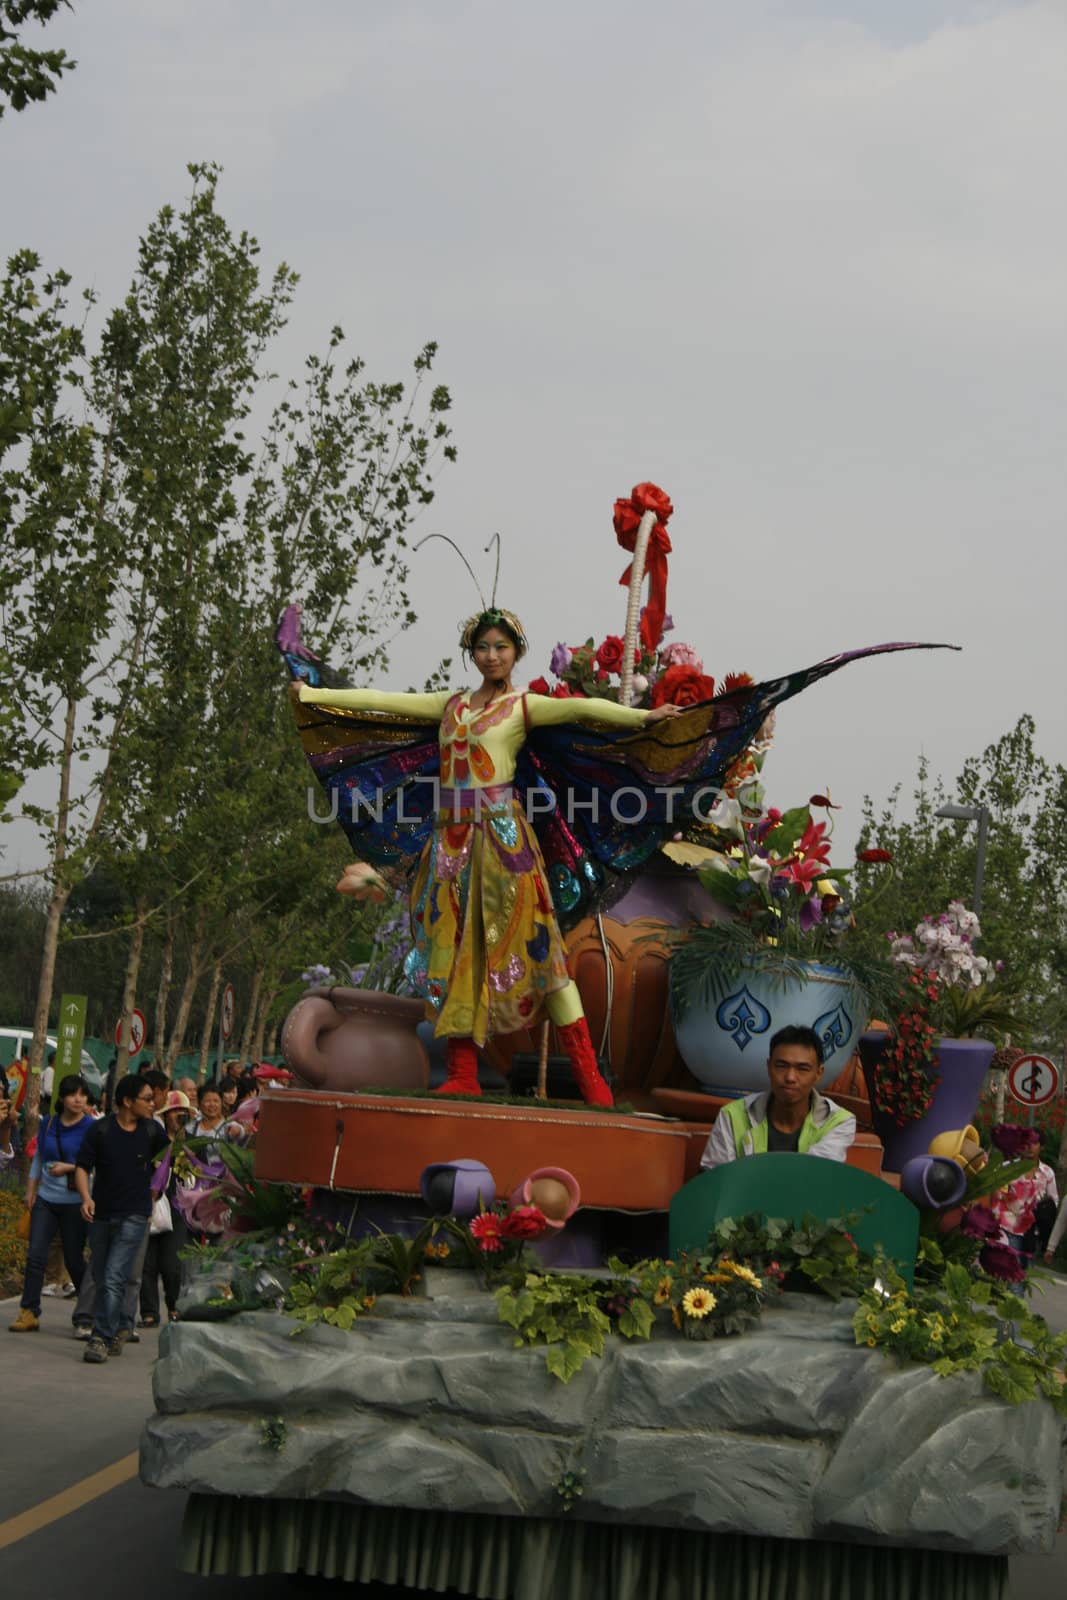 Parade at the Garden Expo in Xi'an